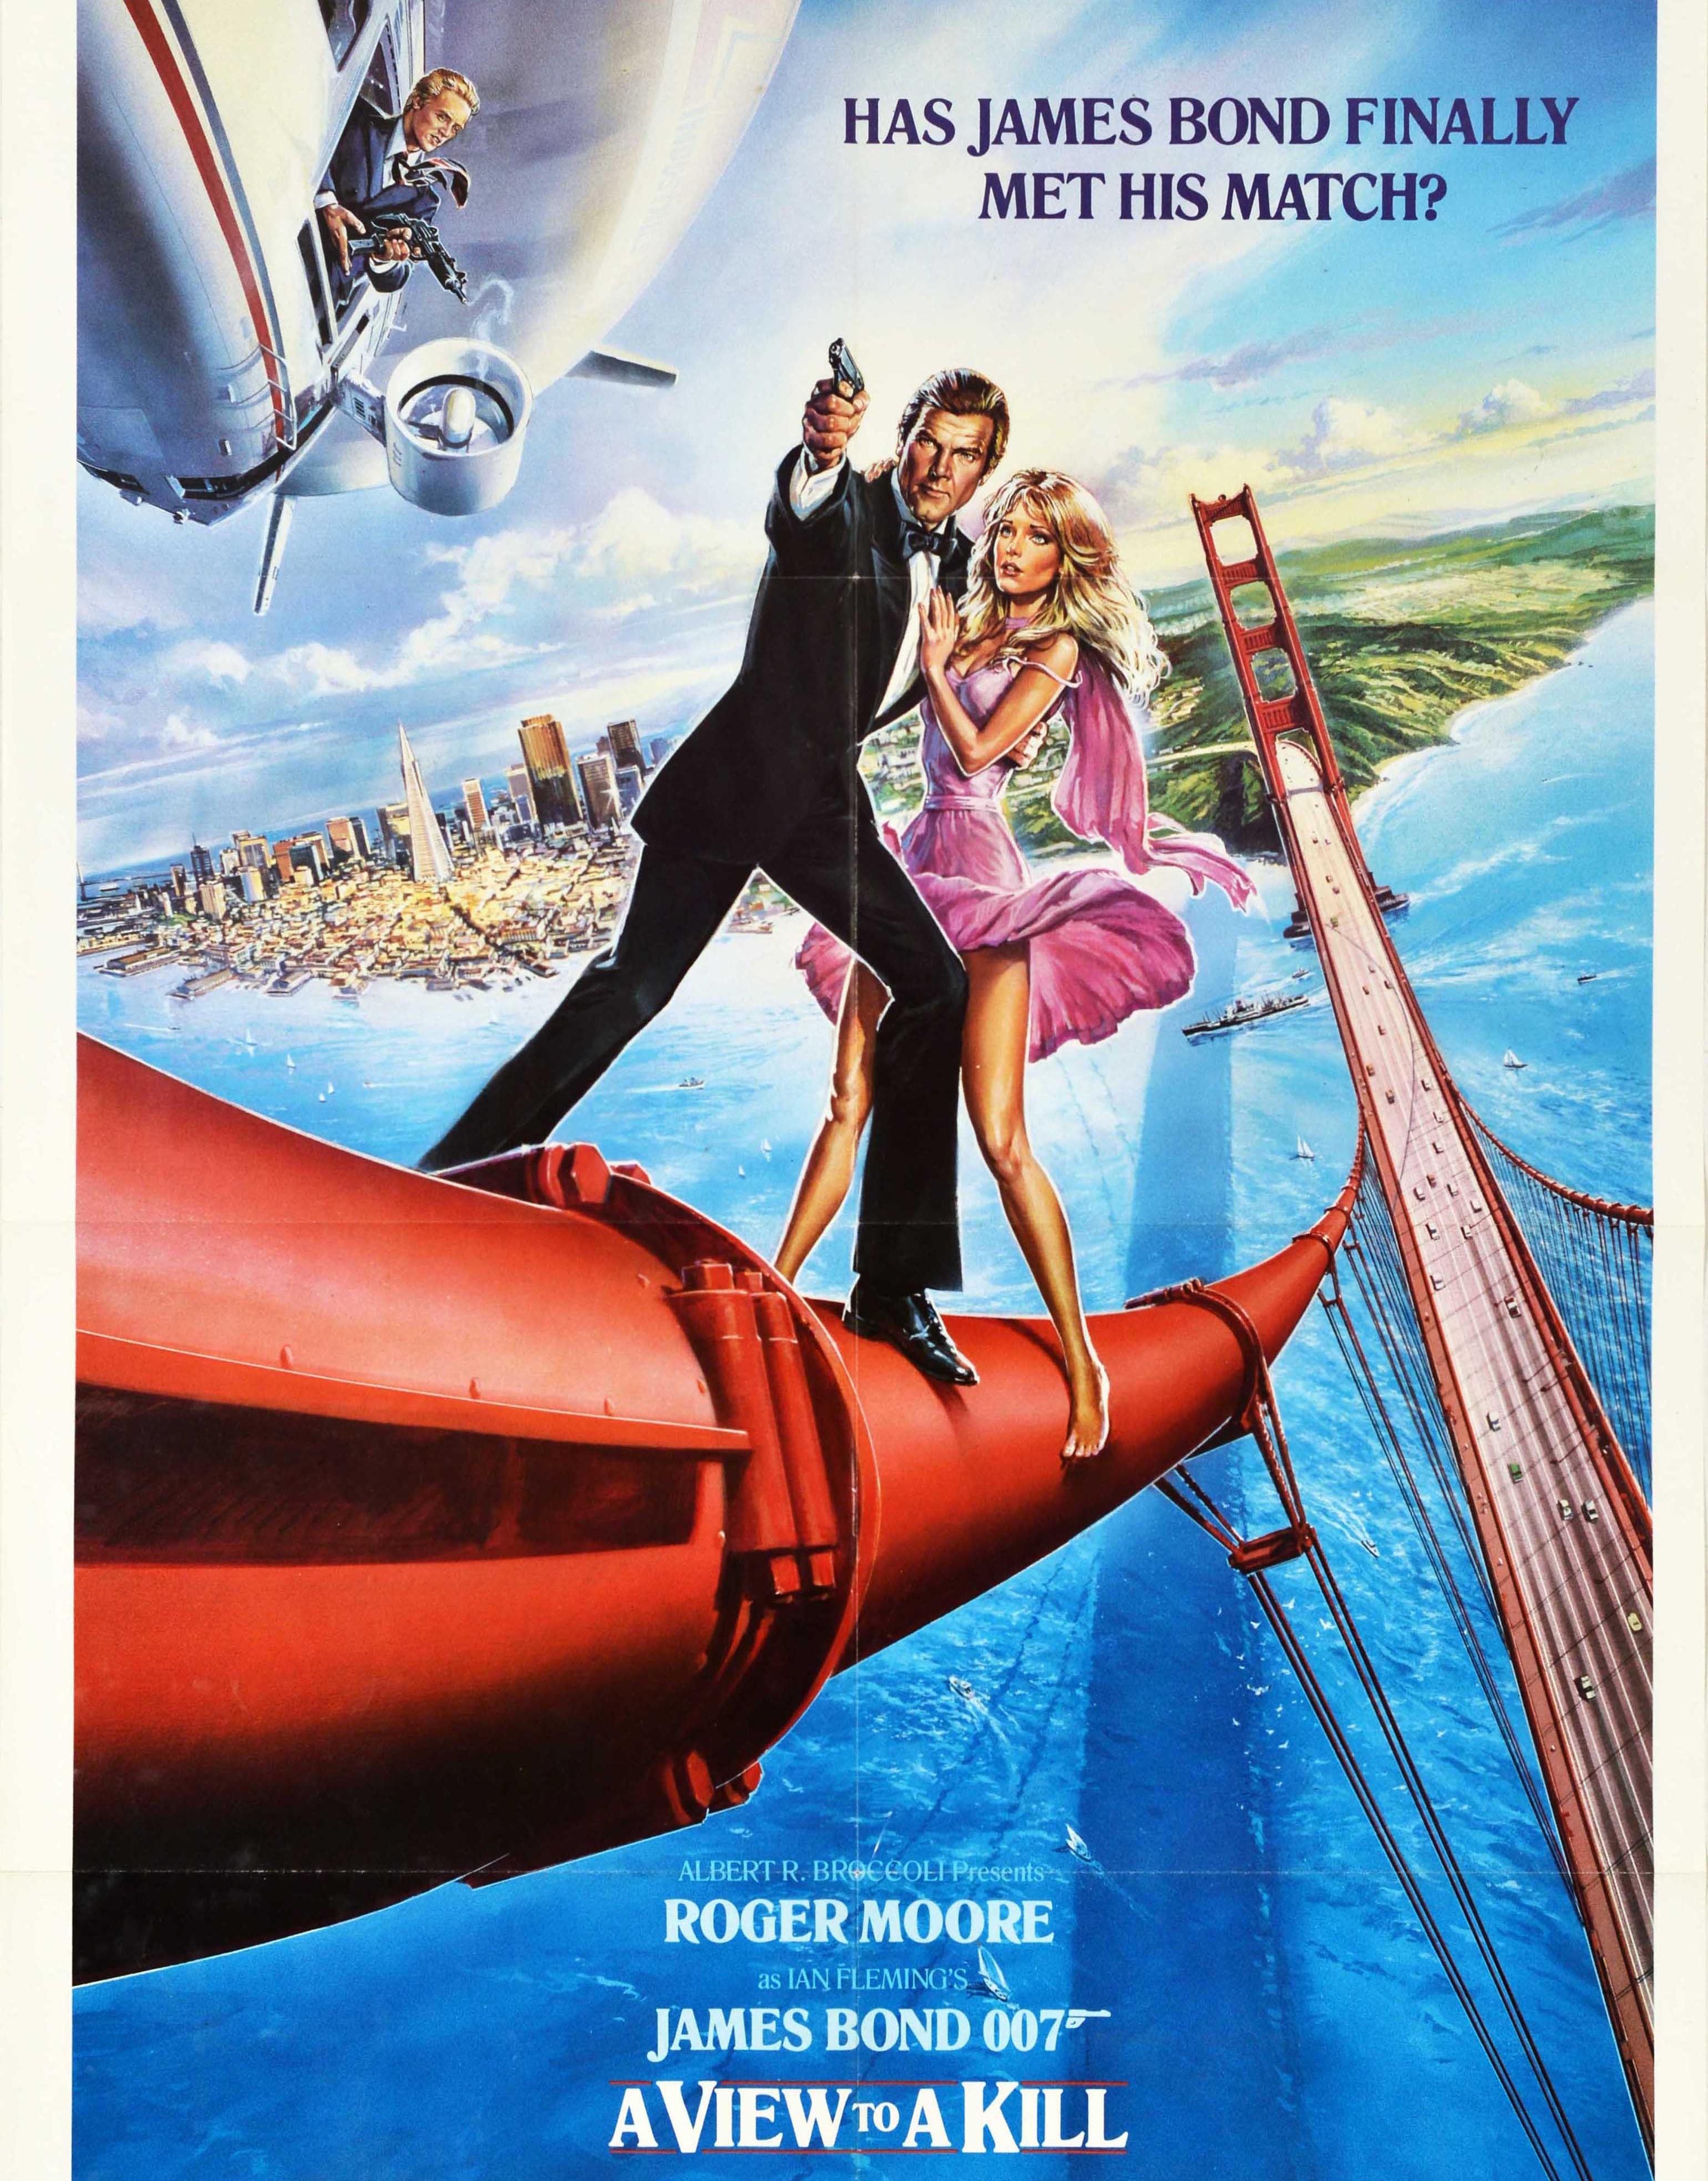 Originales altes Filmplakat für den James Bond 007 Film A View To A Kill - Hat James Bond endlich seinen Meister gefunden? - unter der Regie von John Glen mit Roger Moore in der Rolle des britischen Spions James Bond, Grace Jones als May Day,